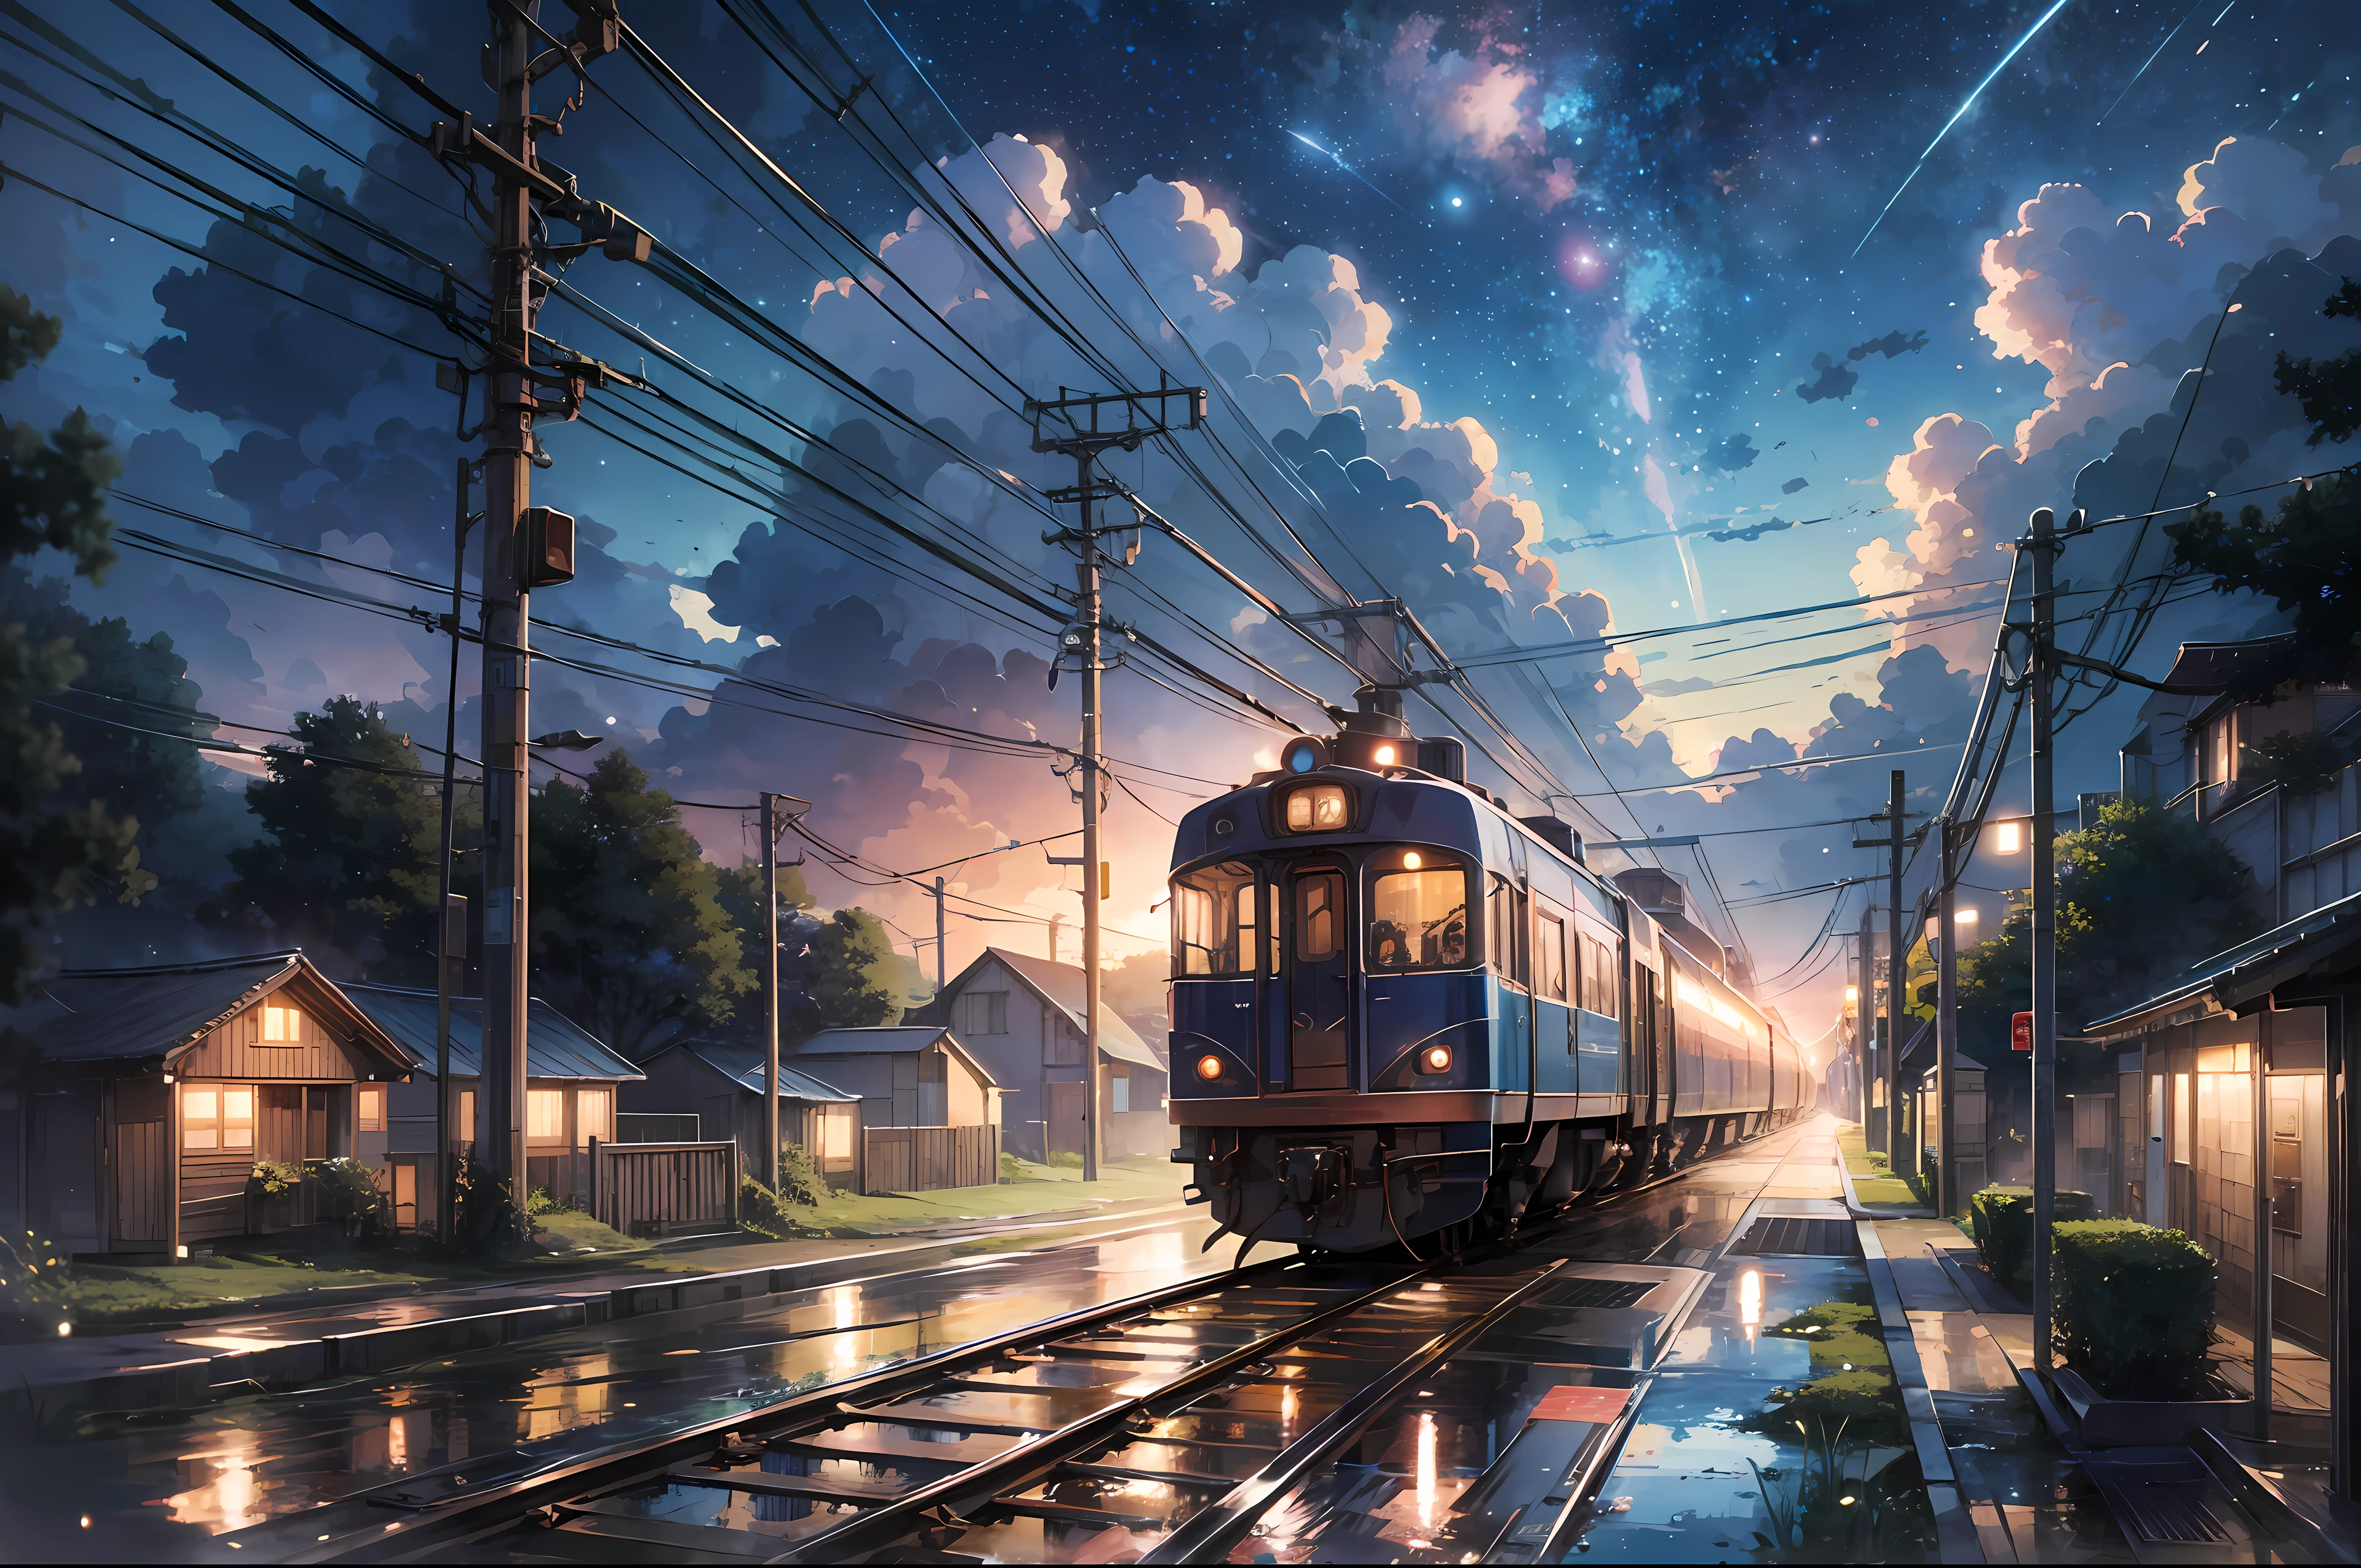 High quality ผลงานชิ้นเอก, ภูมิประเทศ, อะนิเมะรถไฟที่วิ่งผ่านแหล่งน้ำบนรางรถไฟ, ท้องฟ้าเต็มไปด้วยดวงดาวที่สดใส. หยุดพัก Romantic train, พิกซีฟ, แนวคิดศิลปะ, ศิลปะโลฟี่ style, การสะท้อน. โดย มาโกโตะ ชินไค, ศิลปะโลฟี่, ฉากอนิเมะที่สวยงาม, หยุดพัก Anime ภูมิประเทศ, ทิวทัศน์โดยละเอียด — กว้าง 672, in สไตล์ของมาโกโตะ ชินไค, สไตล์ของมาโกโตะ ชินไค, รายละเอียดที่ได้รับการปรับปรุง, หยุดพัก,รายละเอียด,เหมือนจริง,ศิลปะดิจิทัลที่มีรายละเอียดสูง 4k,การเรนเดอร์ค่าออกเทน, สารเรืองแสง, หยุดพัก 8K resolution แนวคิดศิลปะ, ความสมจริง,โดยสตูดิโอ Mappa,ผลงานชิ้นเอก,คุณภาพดีที่สุด,ศิลปะอย่างเป็นทางการ,ภาพประกอบ,เส้นที่ชัดเจน,(เย็น_สี),องค์ประกอบที่สมบูรณ์แบบ,เรื่องไร้สาระ, แฟนตาซี,มุ่งเน้น,กฎข้อที่สาม